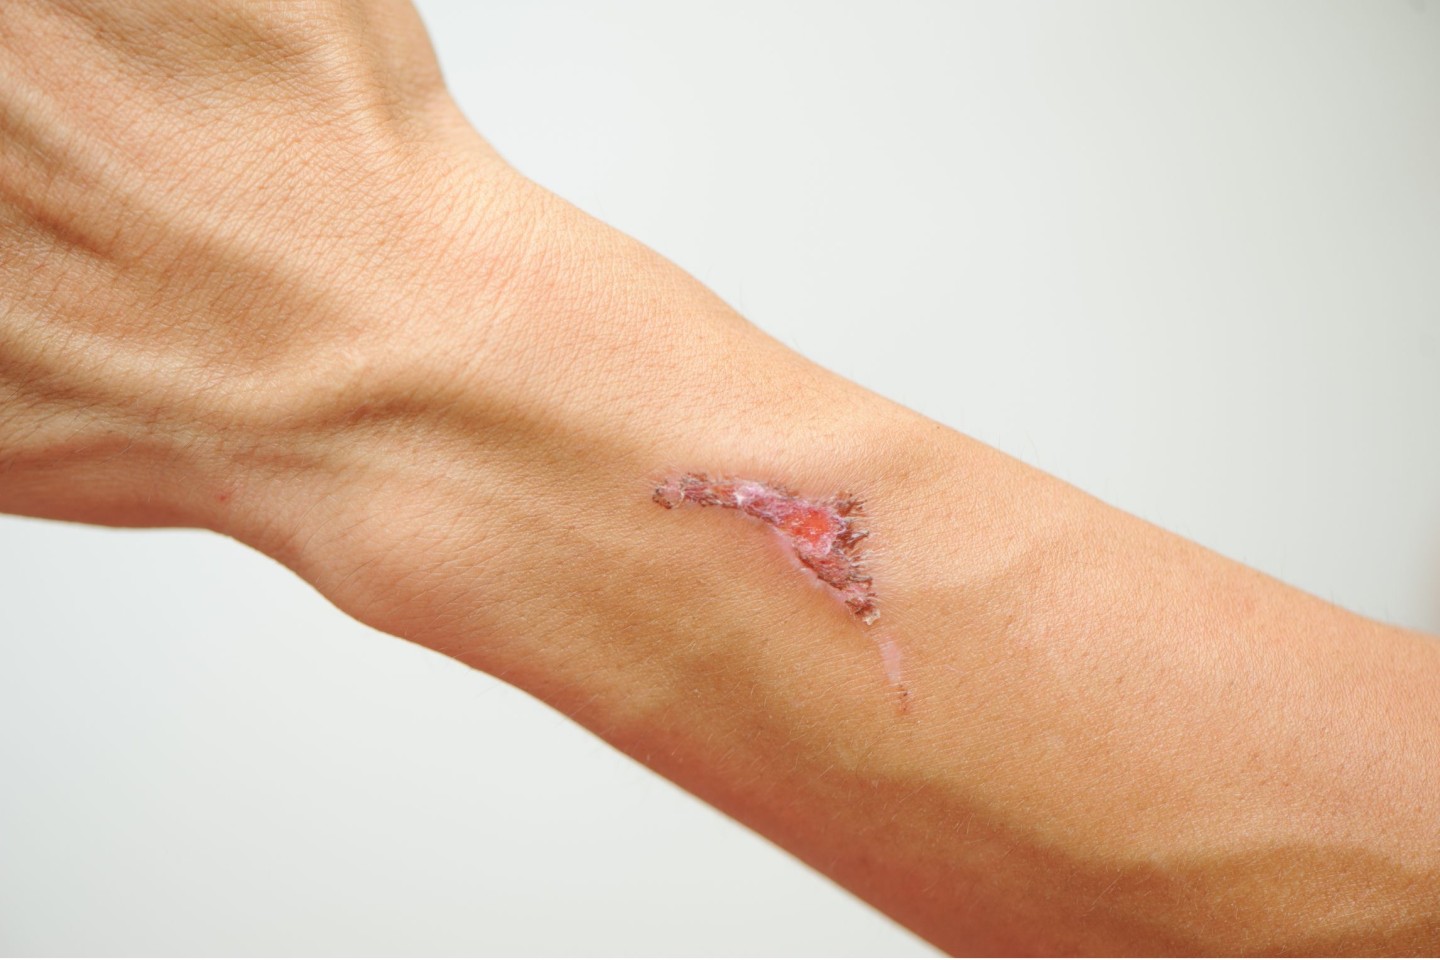 Infizierte Wunden wie Schnittverletzungen oder Insektenstiche können schon zu einer Sepsis führen, daher ist Hygiene und eine gute Wunddesinfektion wichtig. Foto: AOK/hfr.